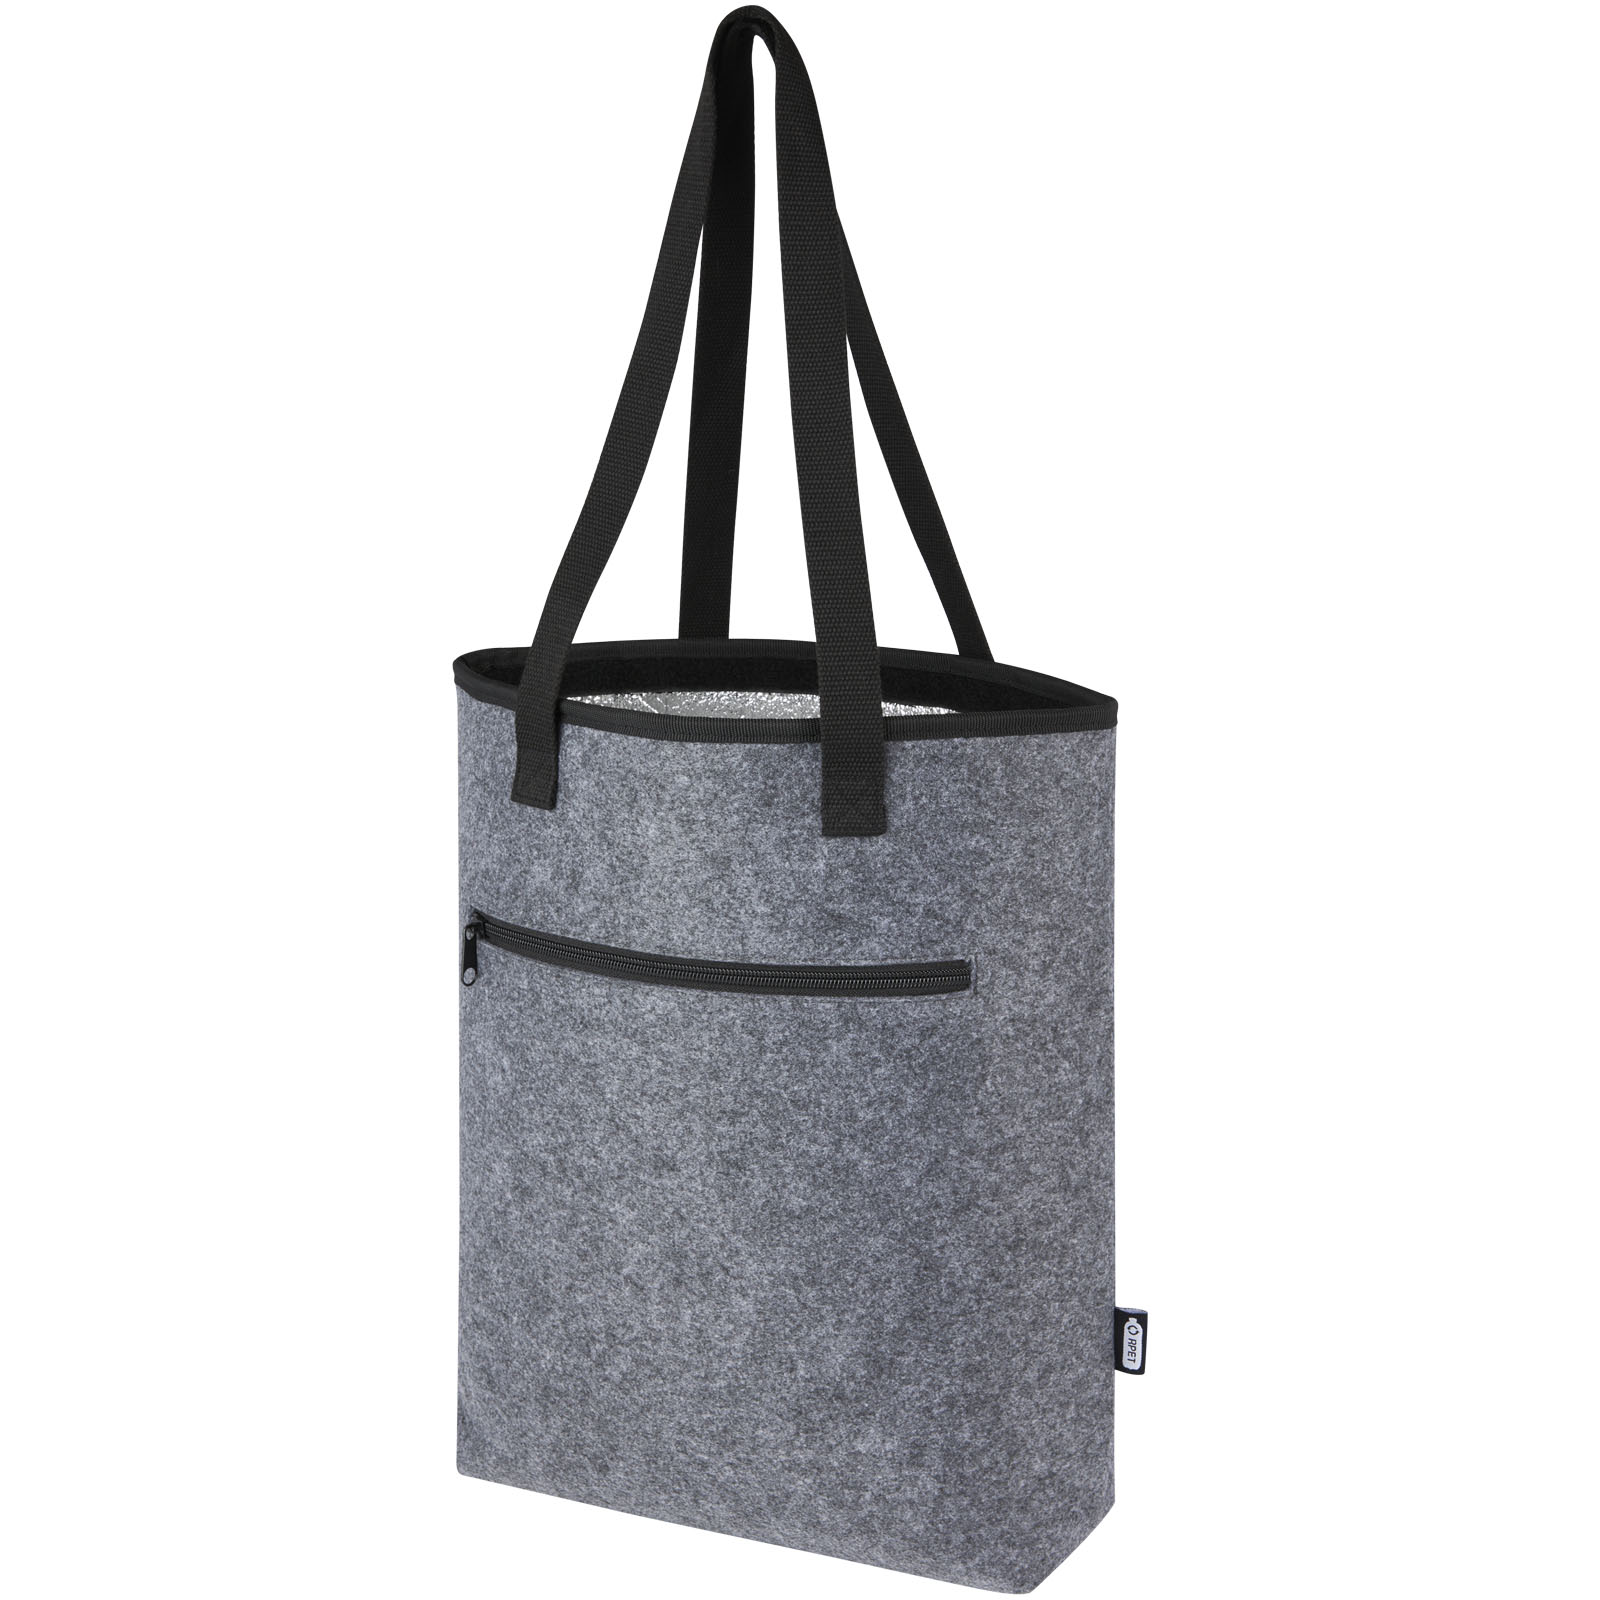 Cooler bags - Felta GRS recycled felt cooler tote bag 12L